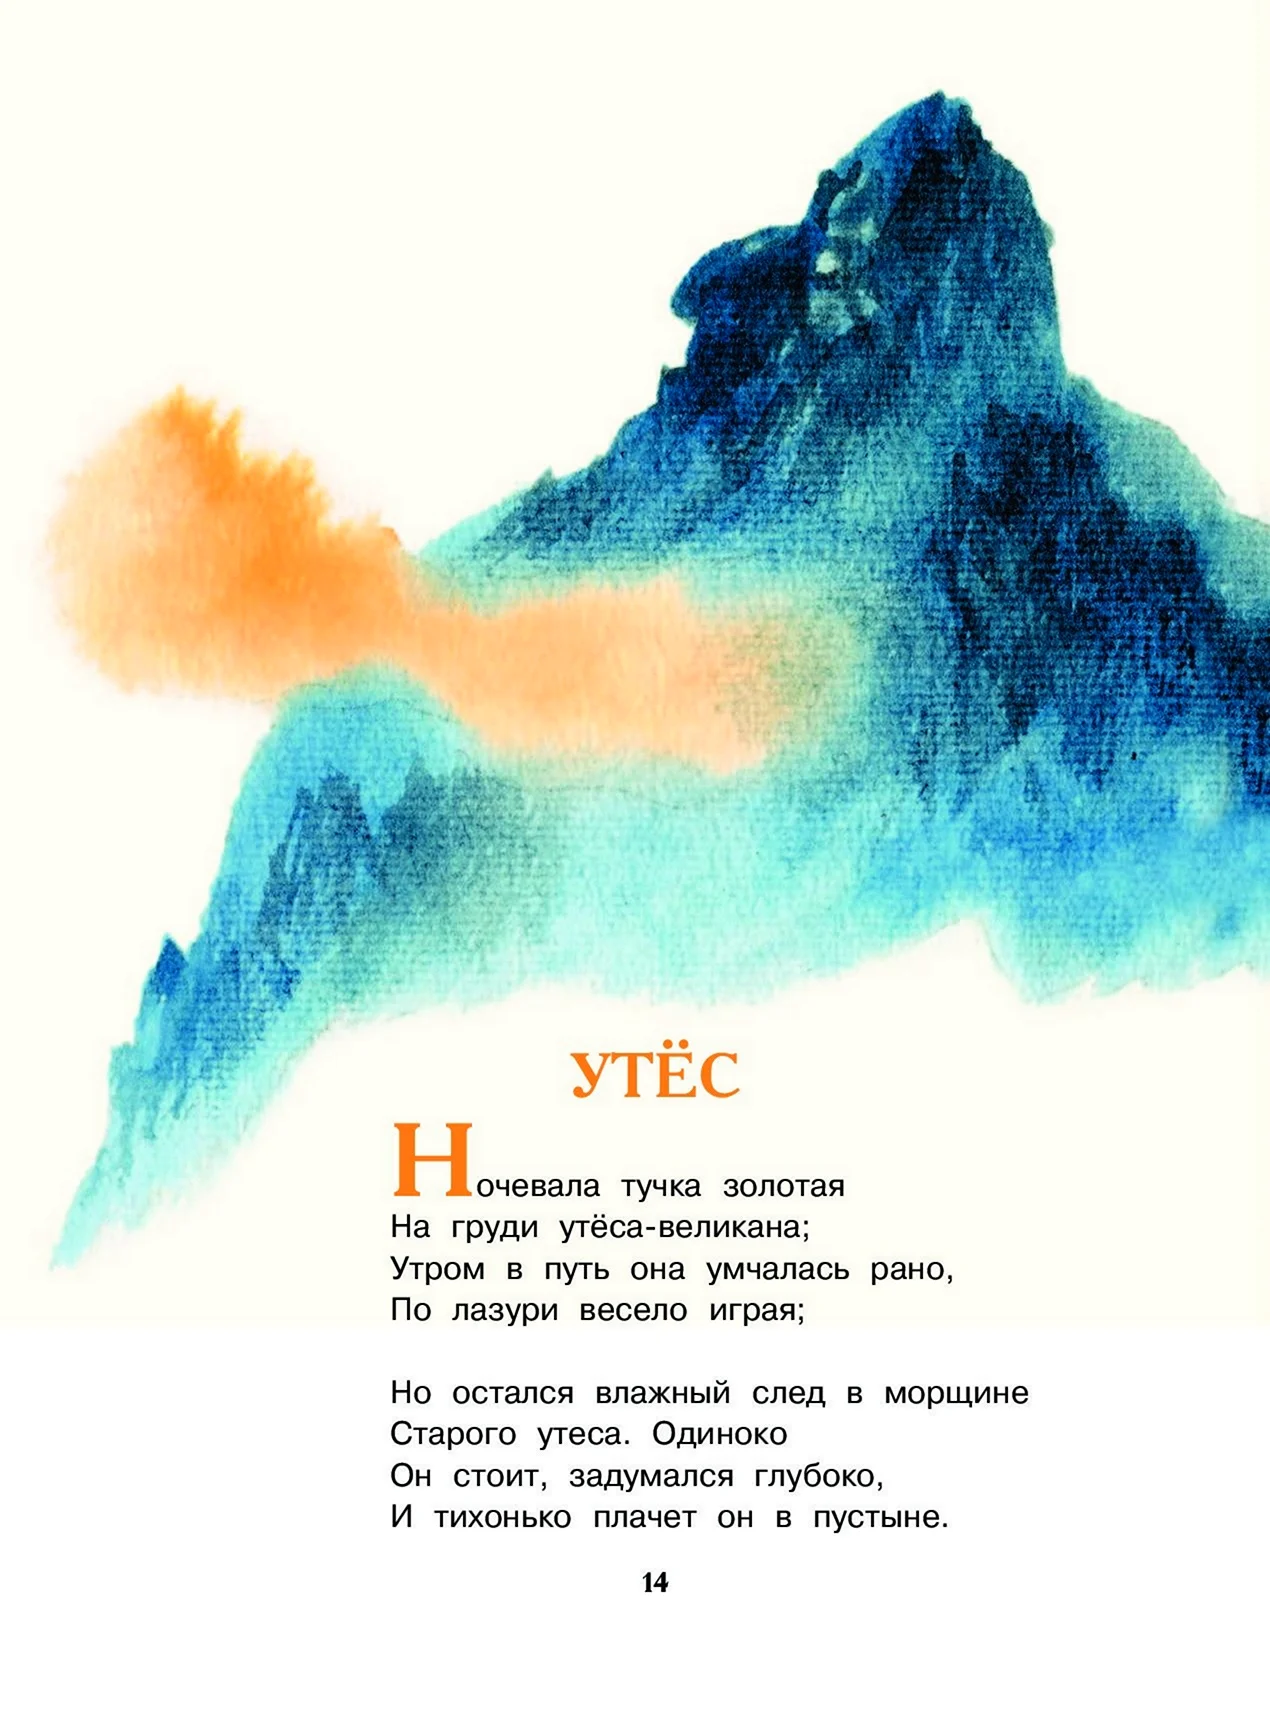 Иллюстрация к стиху Утес Лермонтова